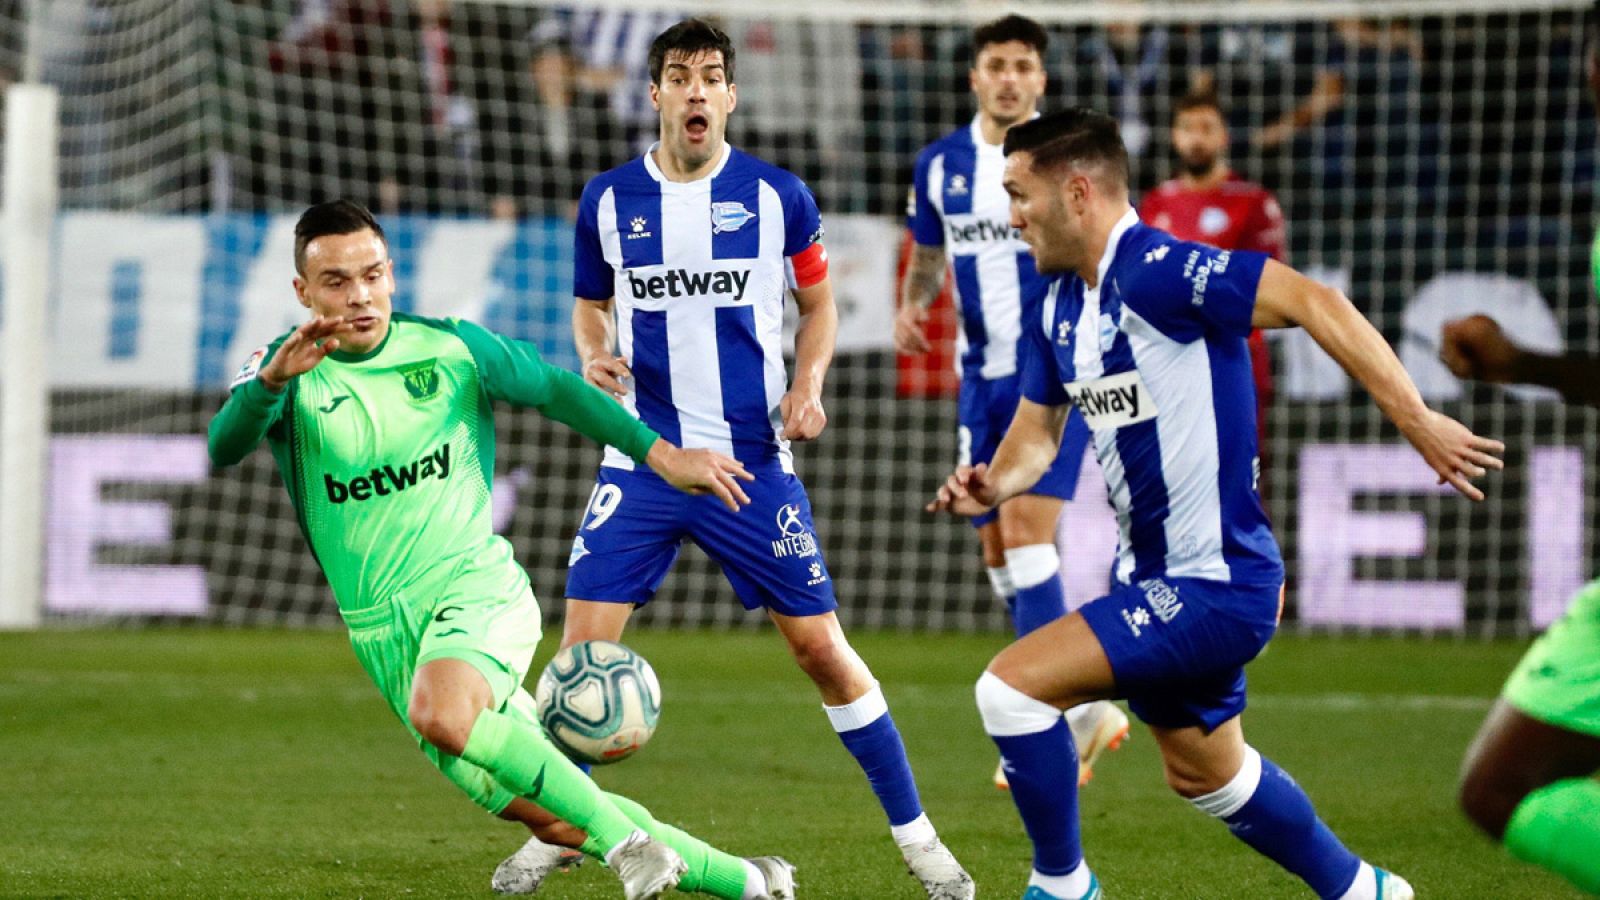 El delantero del Alavés Lucas Pérez intenta controlar el balón ante el centrocampista del Leganés Roque Mesa